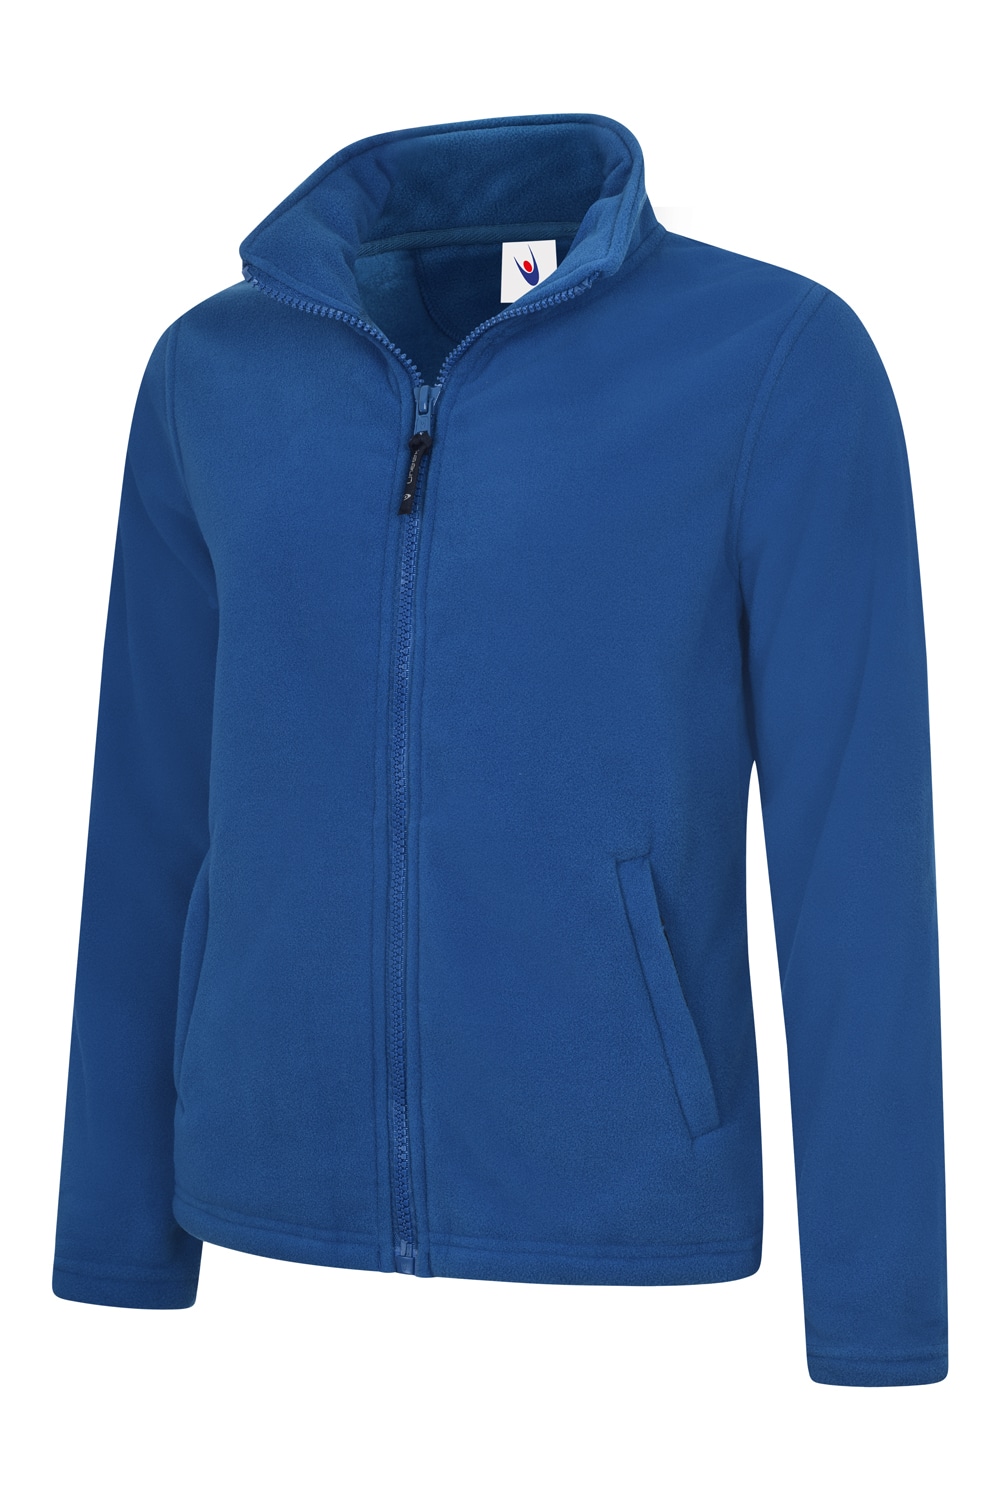 Uneek Classic Full Zip Fleece Jacket – Ladies Fit